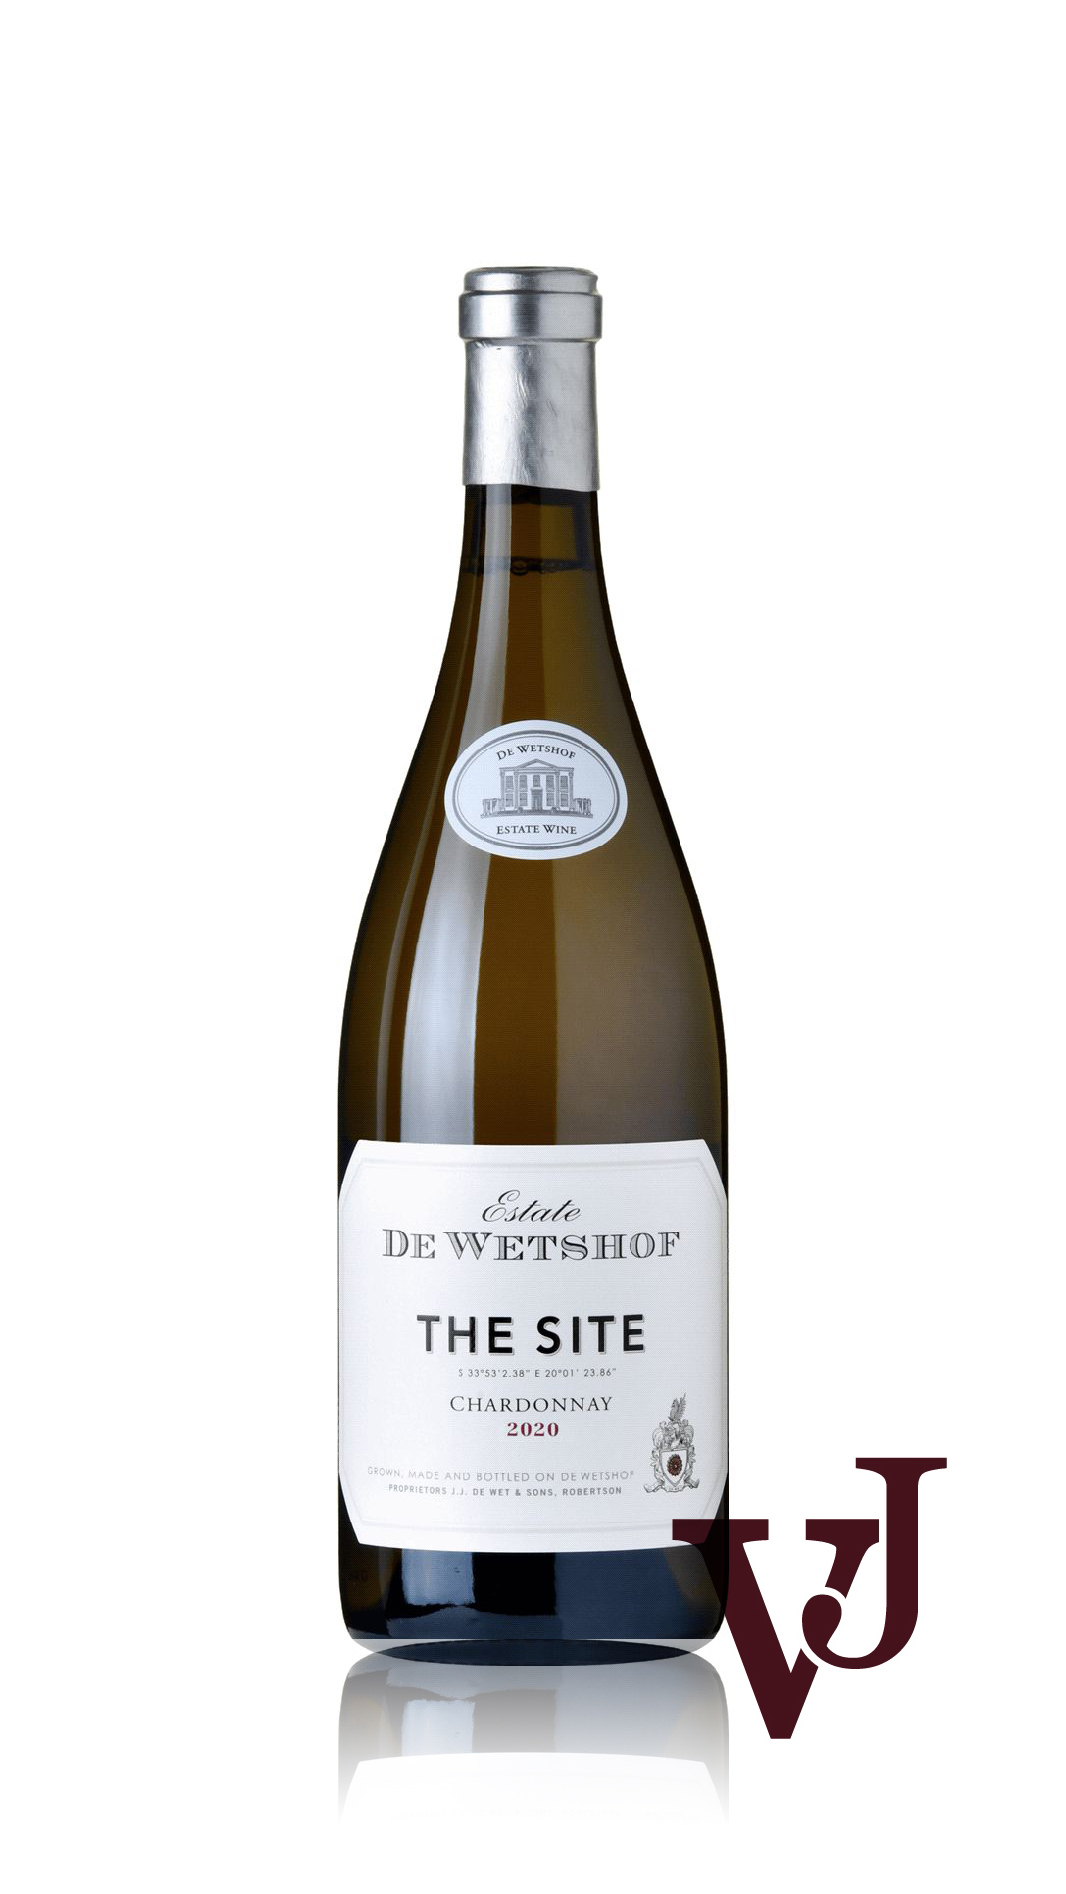 Vitt Vin - De Wetshof The Site artikel nummer 5052001 från producenten De Wetshof Estate från området Sydafrika